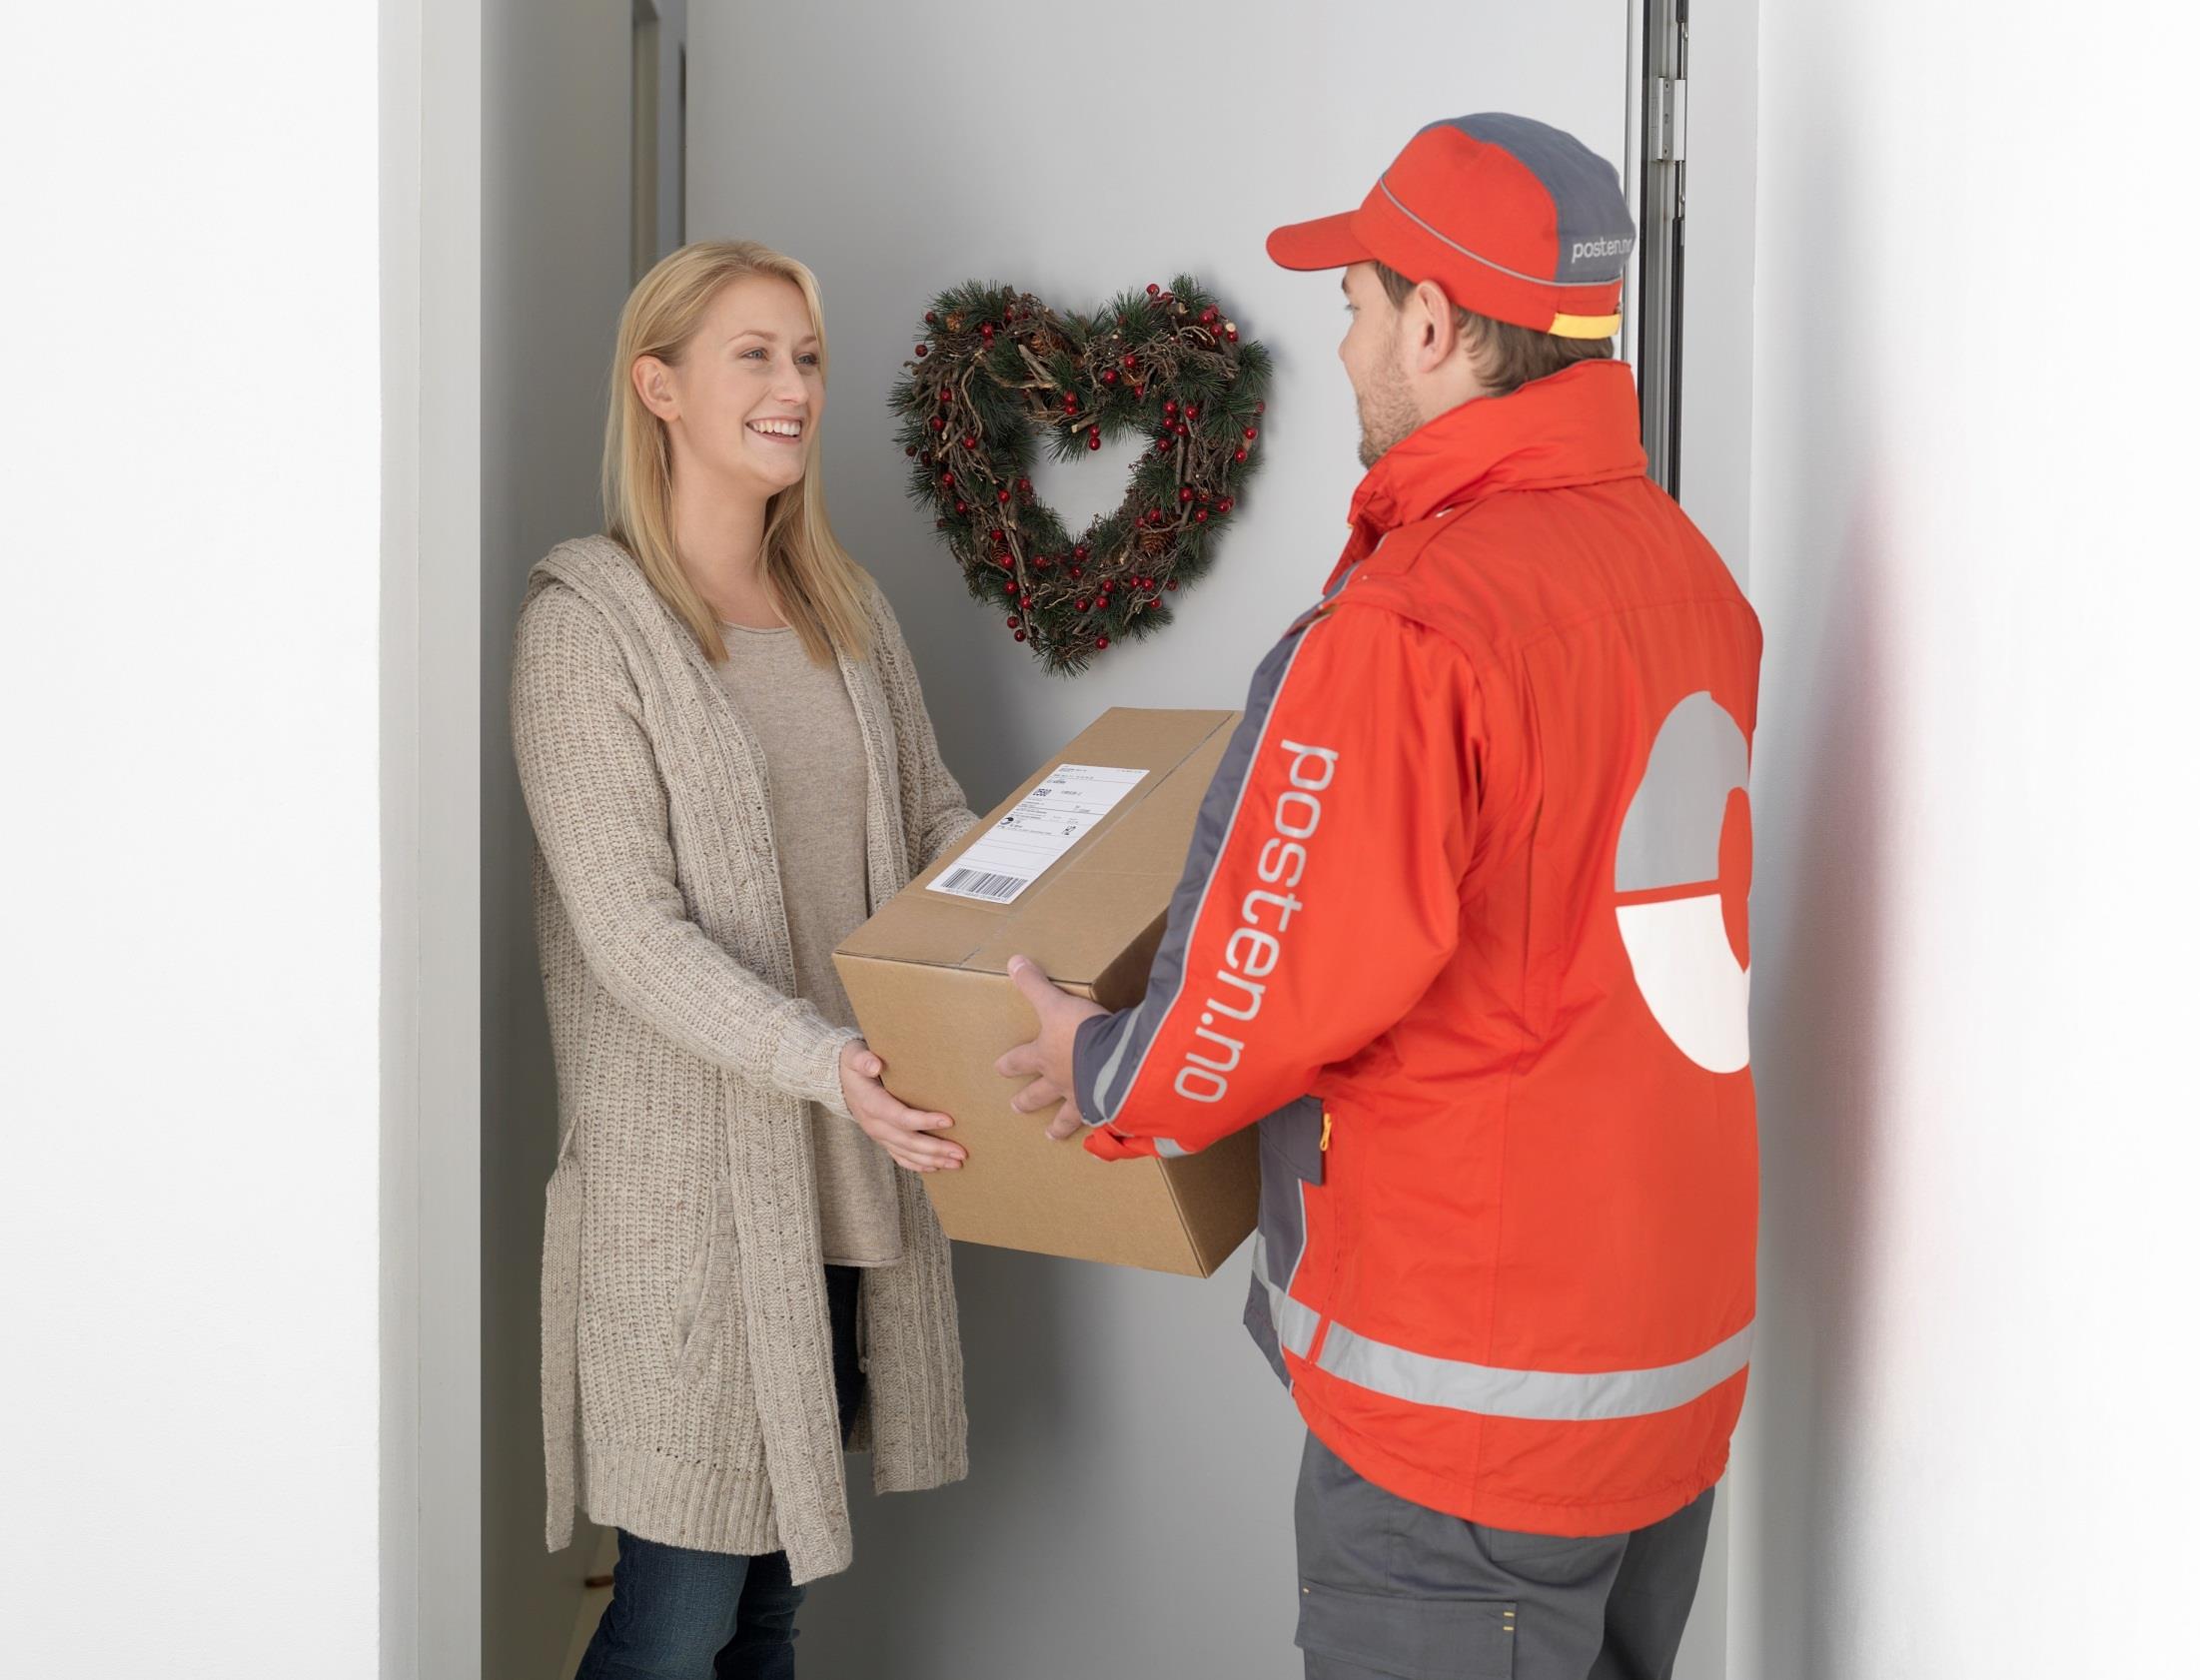 Gi kunden relevante leveringsvalg for julehandel Husk at kundene kan ha andre preferanser for levering i